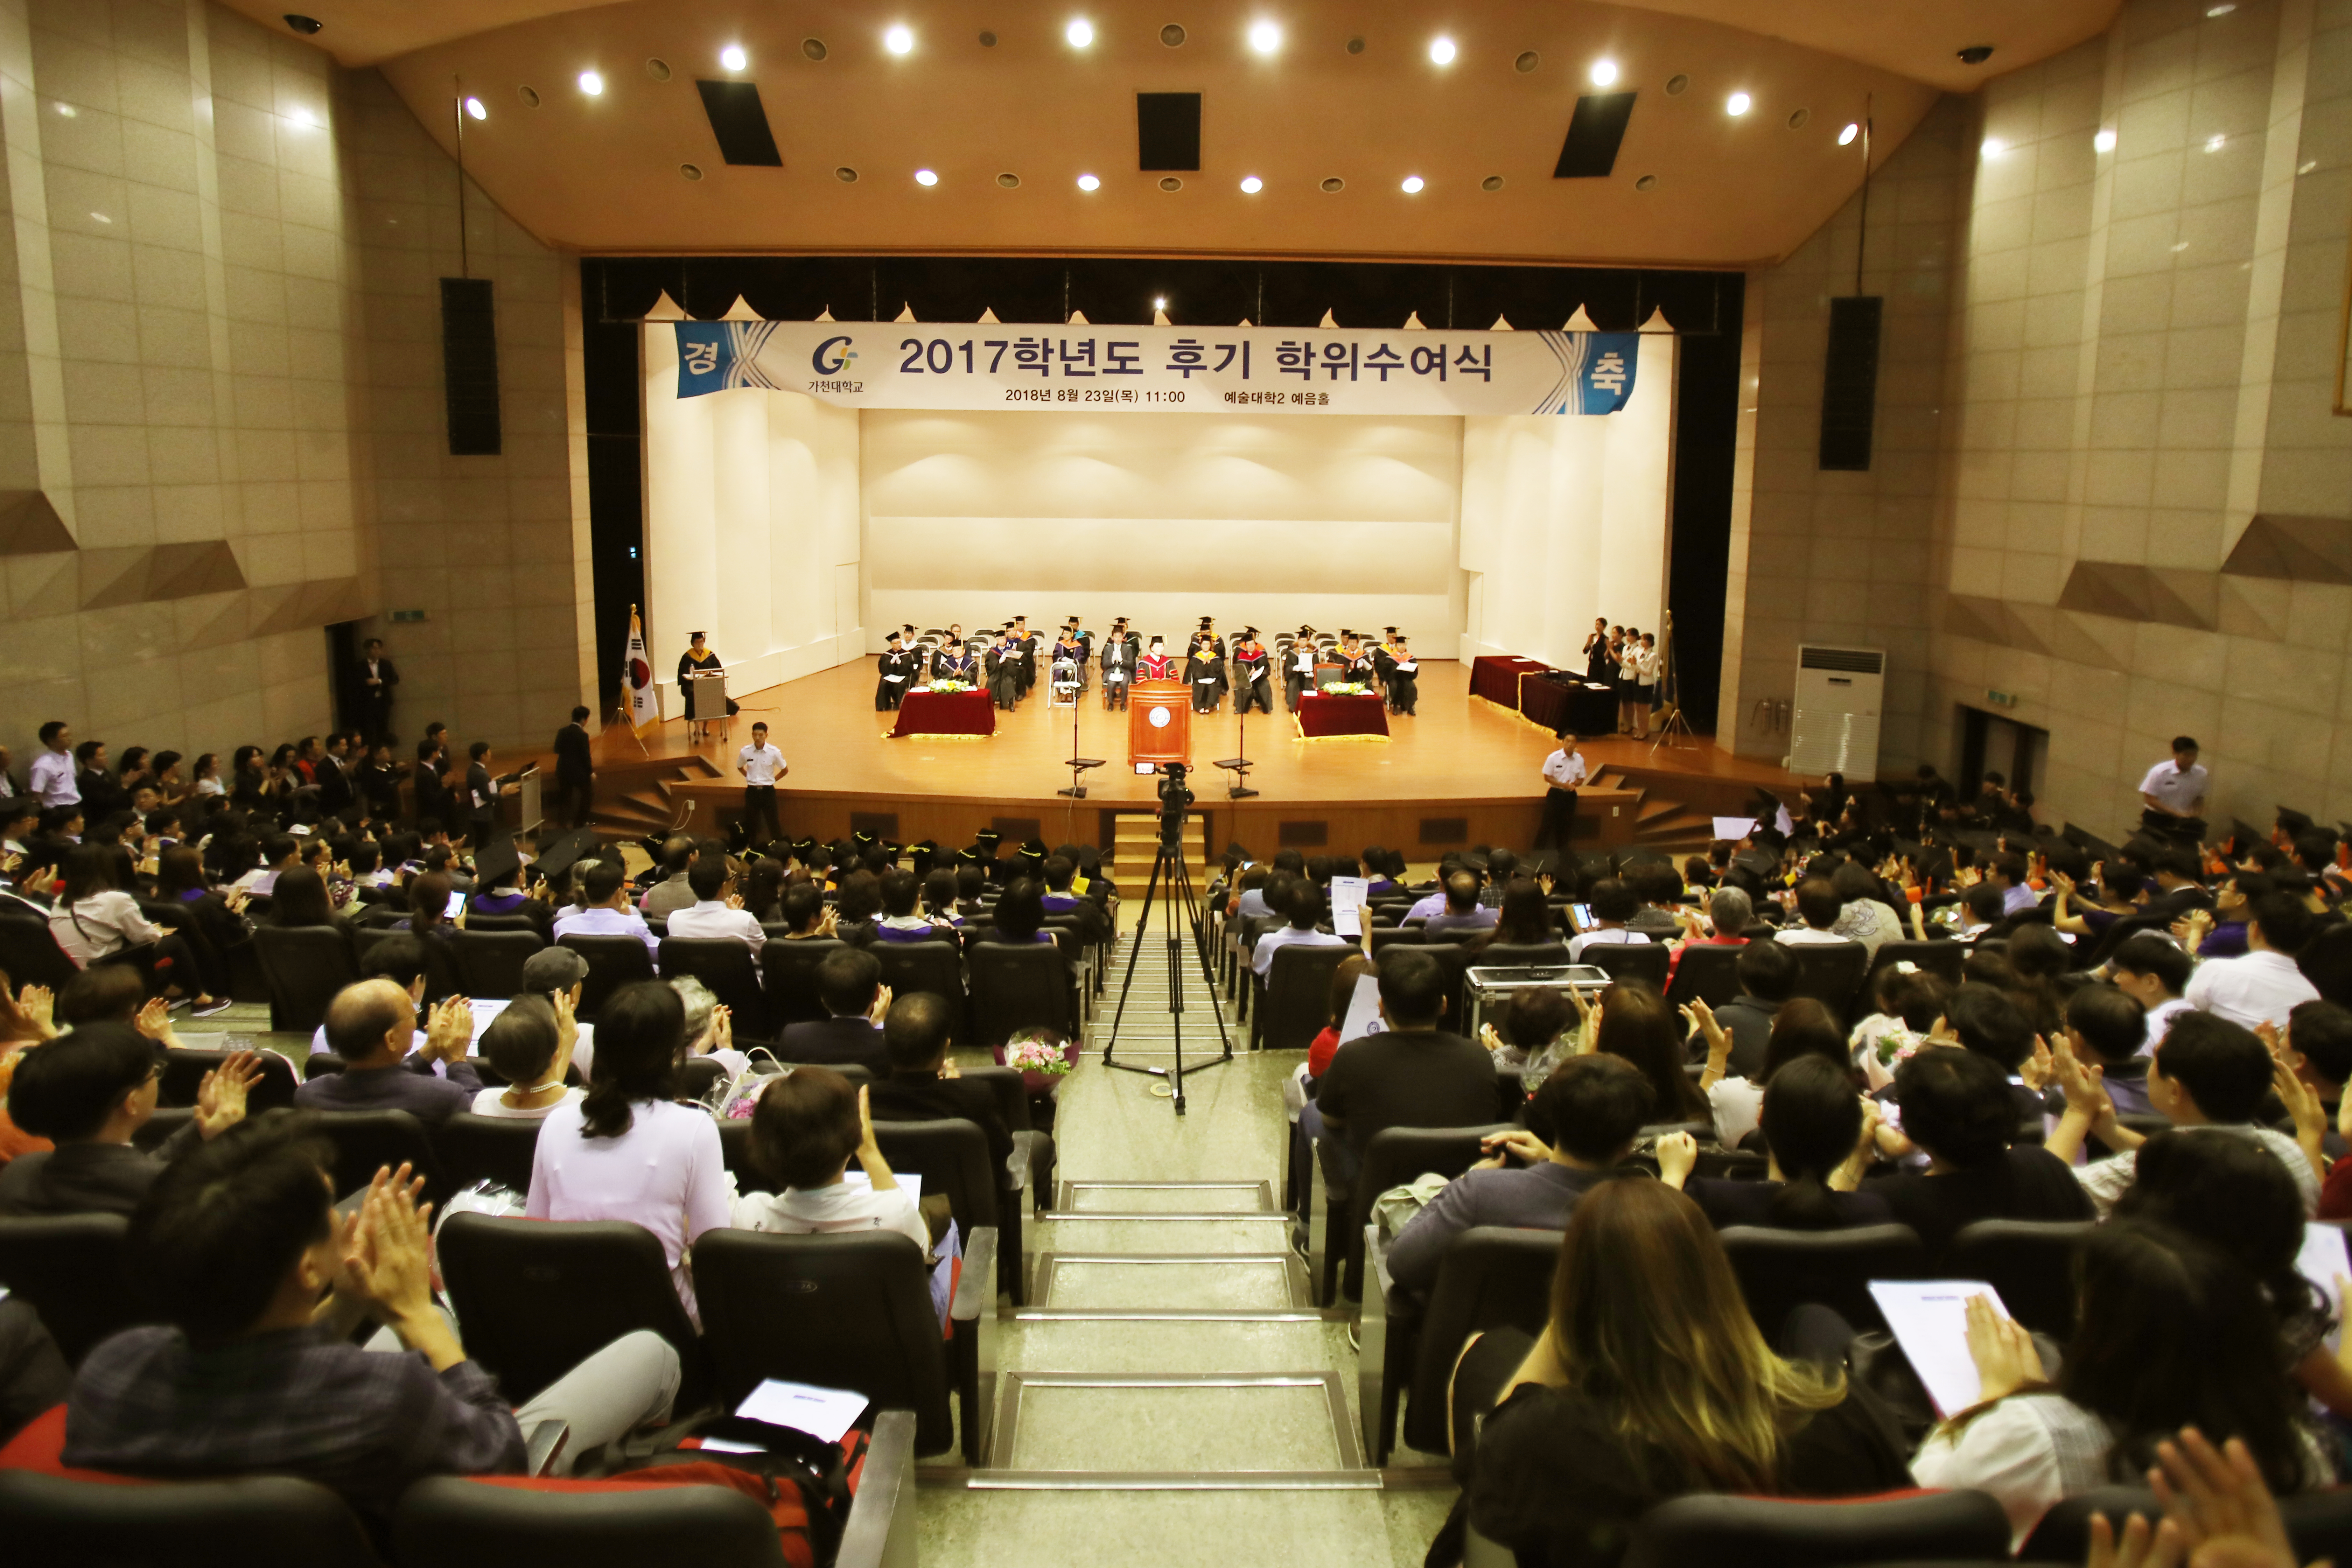 가천대학교는 23일 대학 예음홀에서 학위수여식을 개최했다.이날 수여식에서 박사 22명, 석사 273명, 학사 949명 등 1244명이 학위를 받았다.         (가천대 제공)